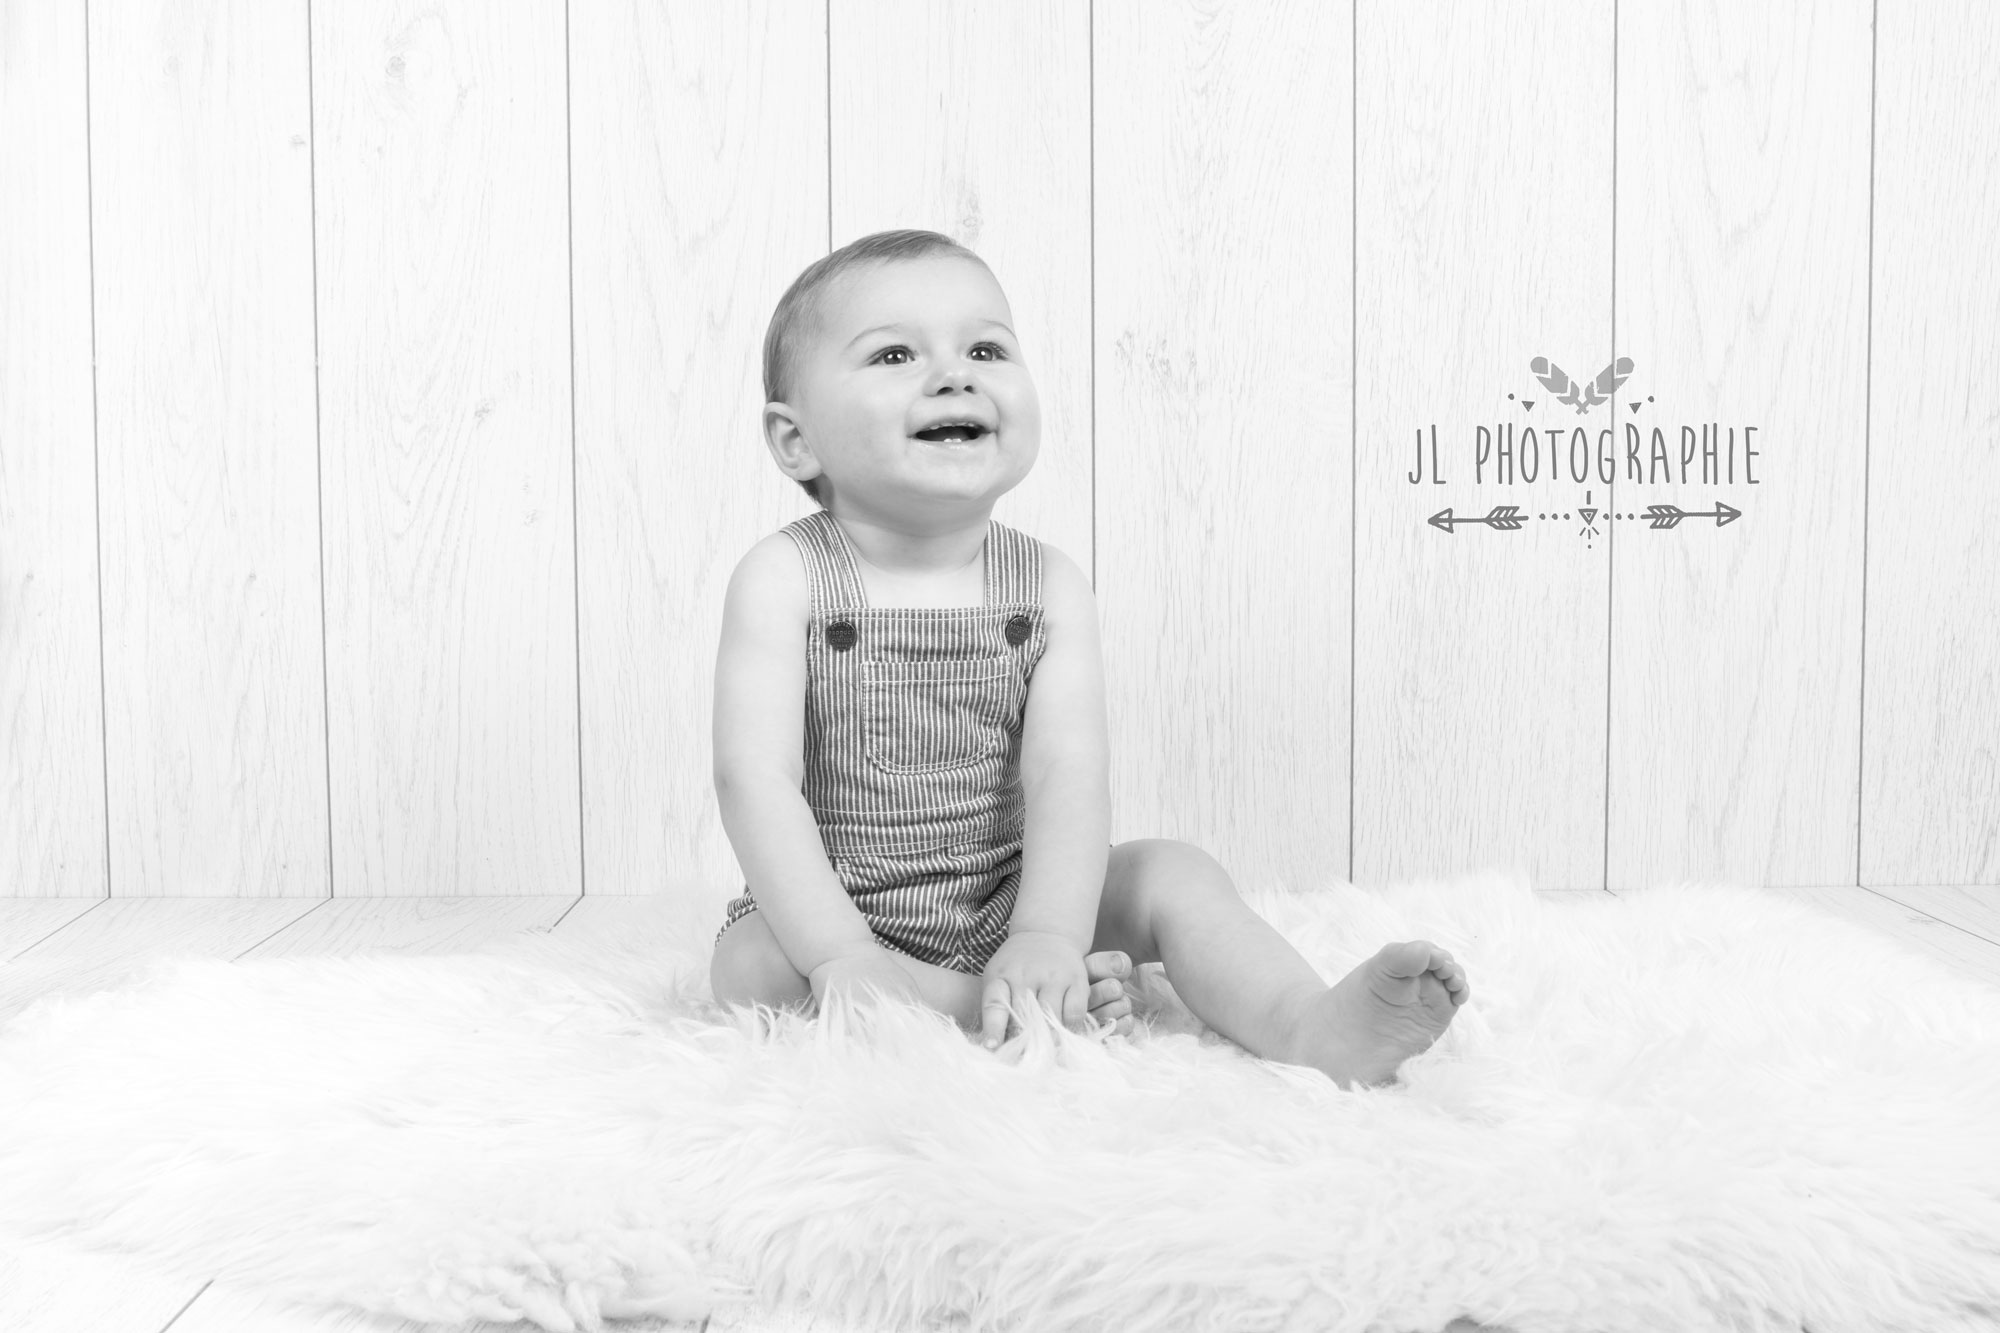 Photographie en noir et blanc d'un bébé assis